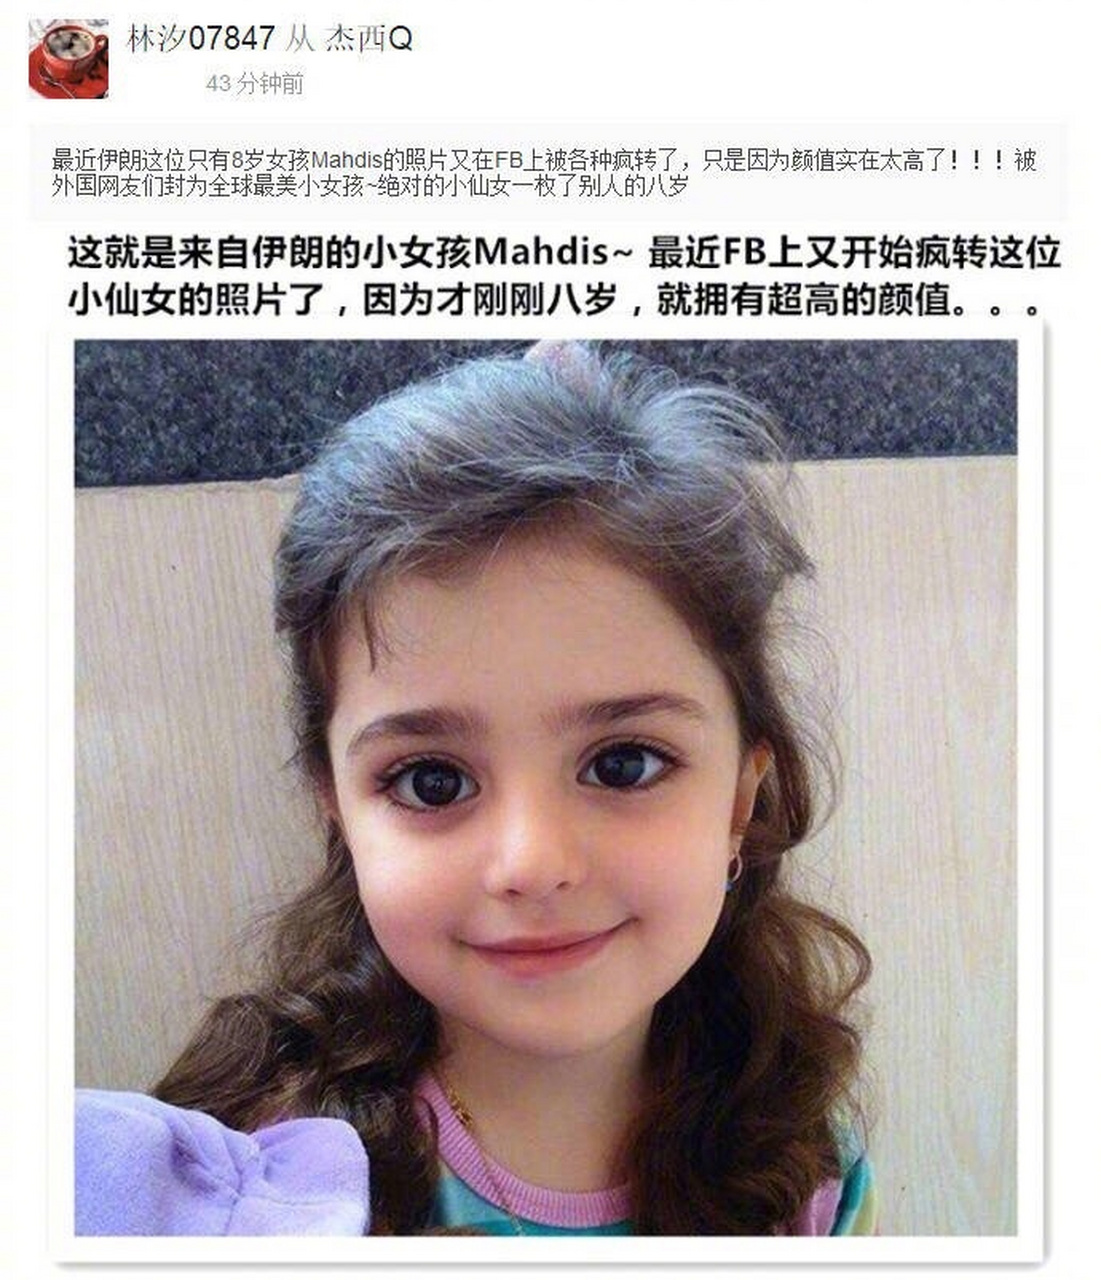 最近一个8岁的伊朗小女孩mahdis的照片在外网传疯了,只是因为颜值太高